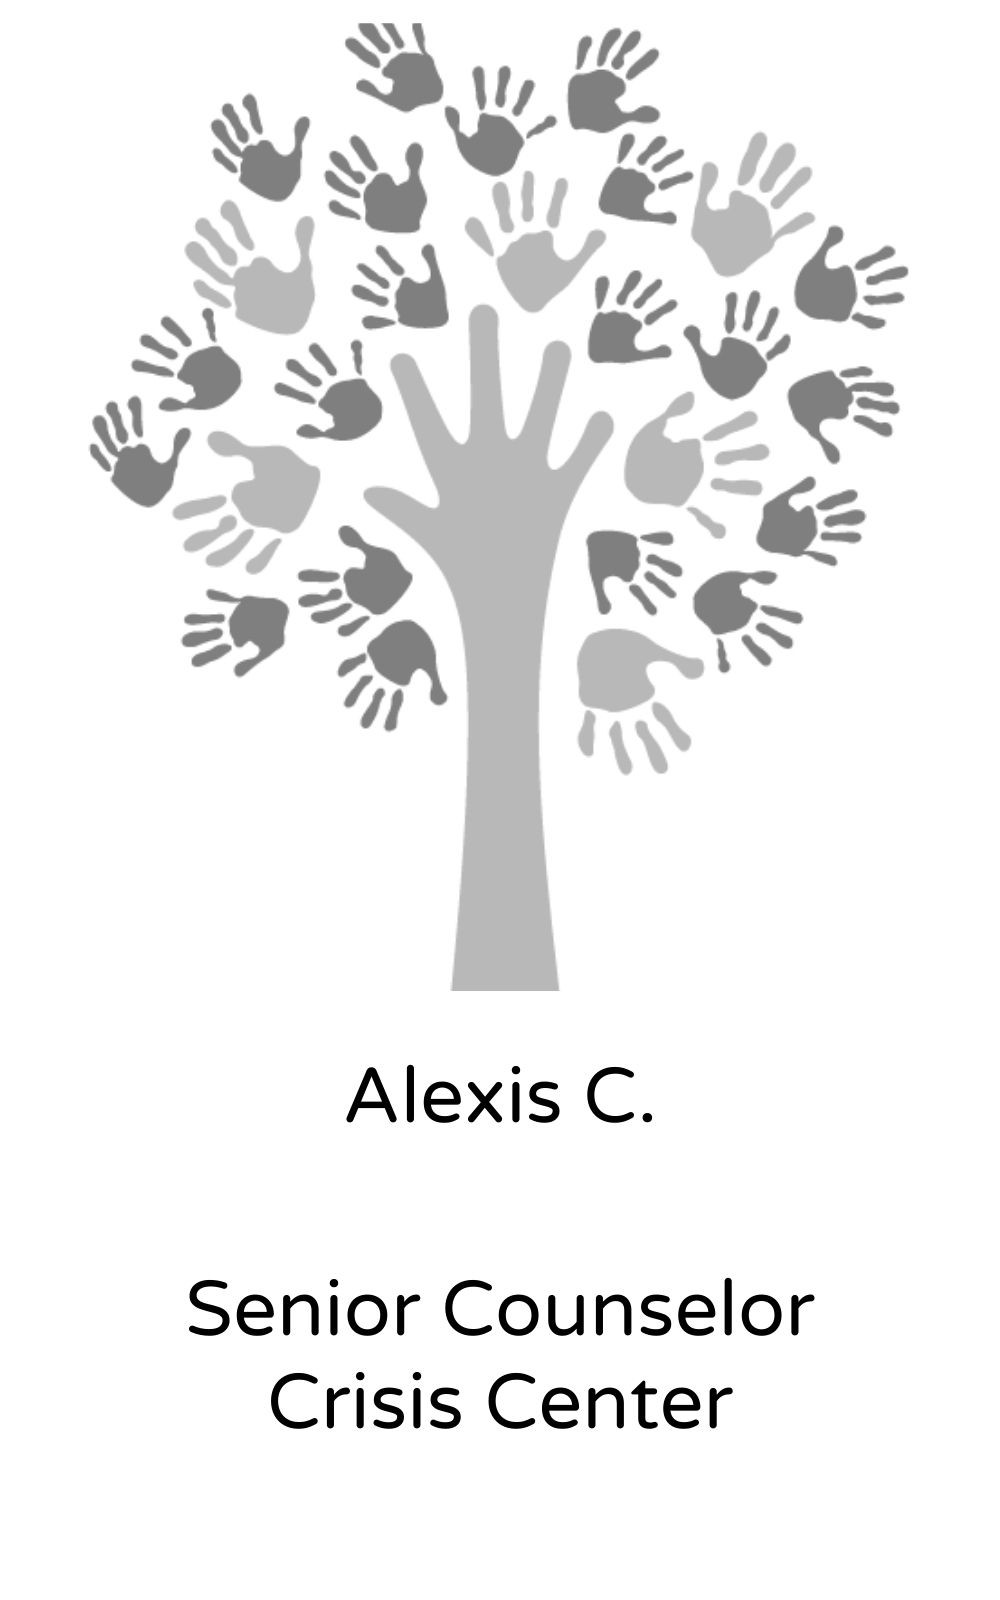 Alexis C, Senior Counselor, Crisis Center